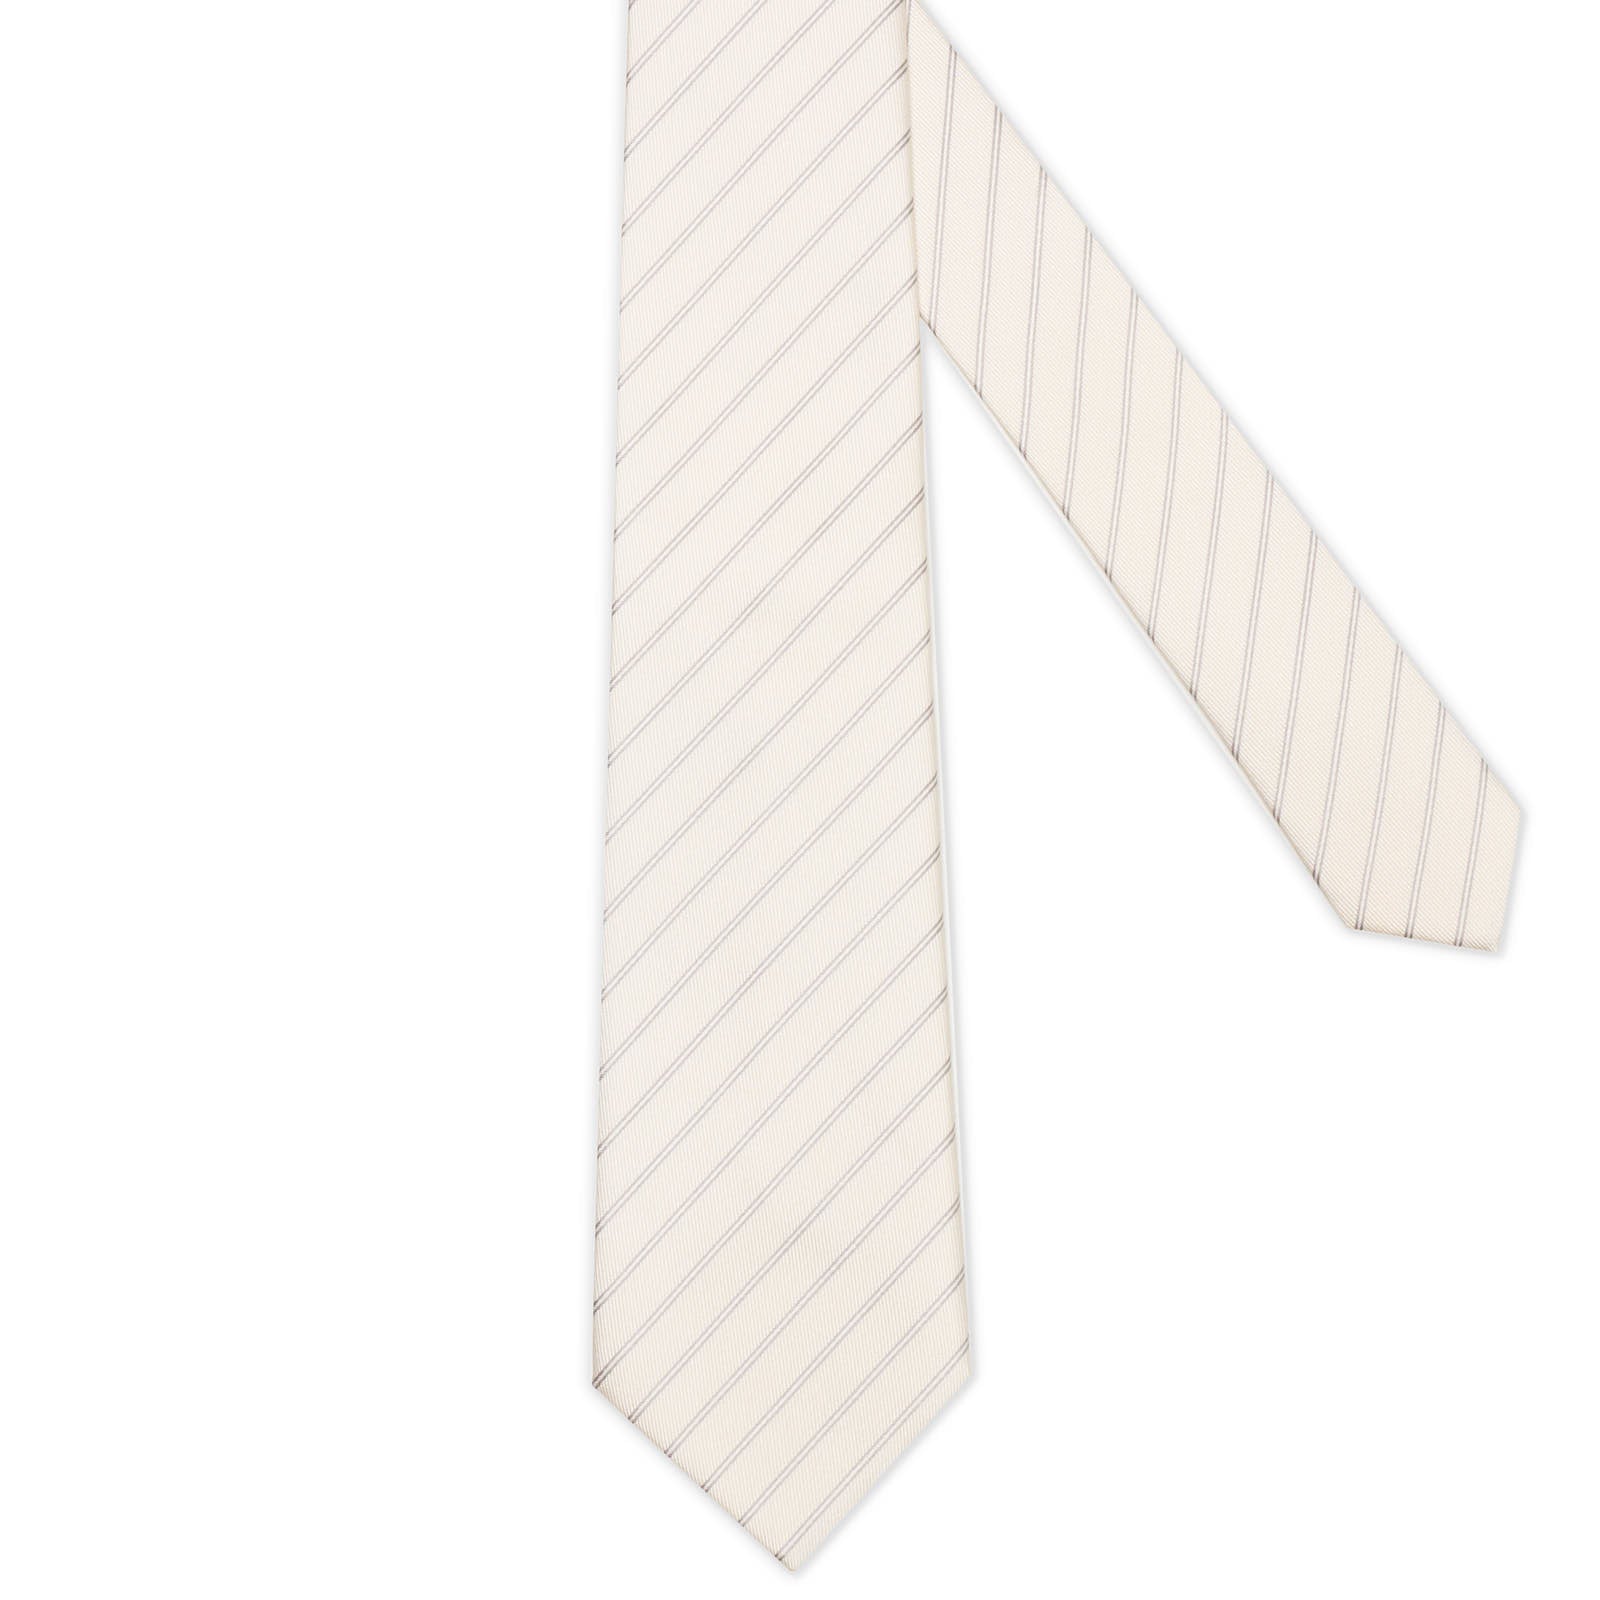 MATTABISCH Off White Diagonal Striped Silk Tie NEW